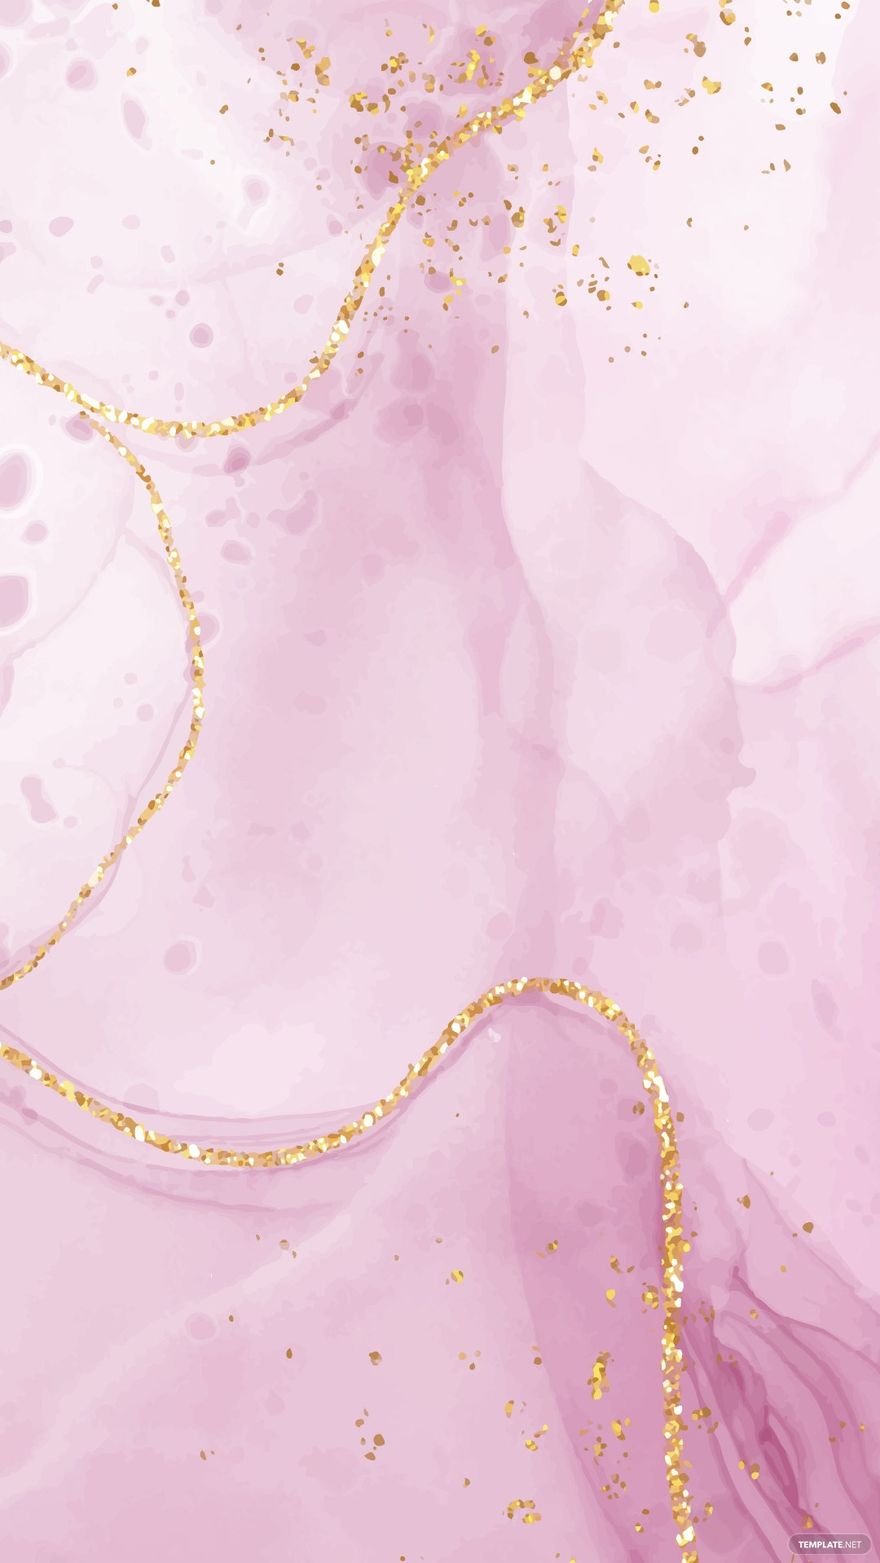 Free Glitter iPhone Background - EPS, Illustrator, JPG, SVG 